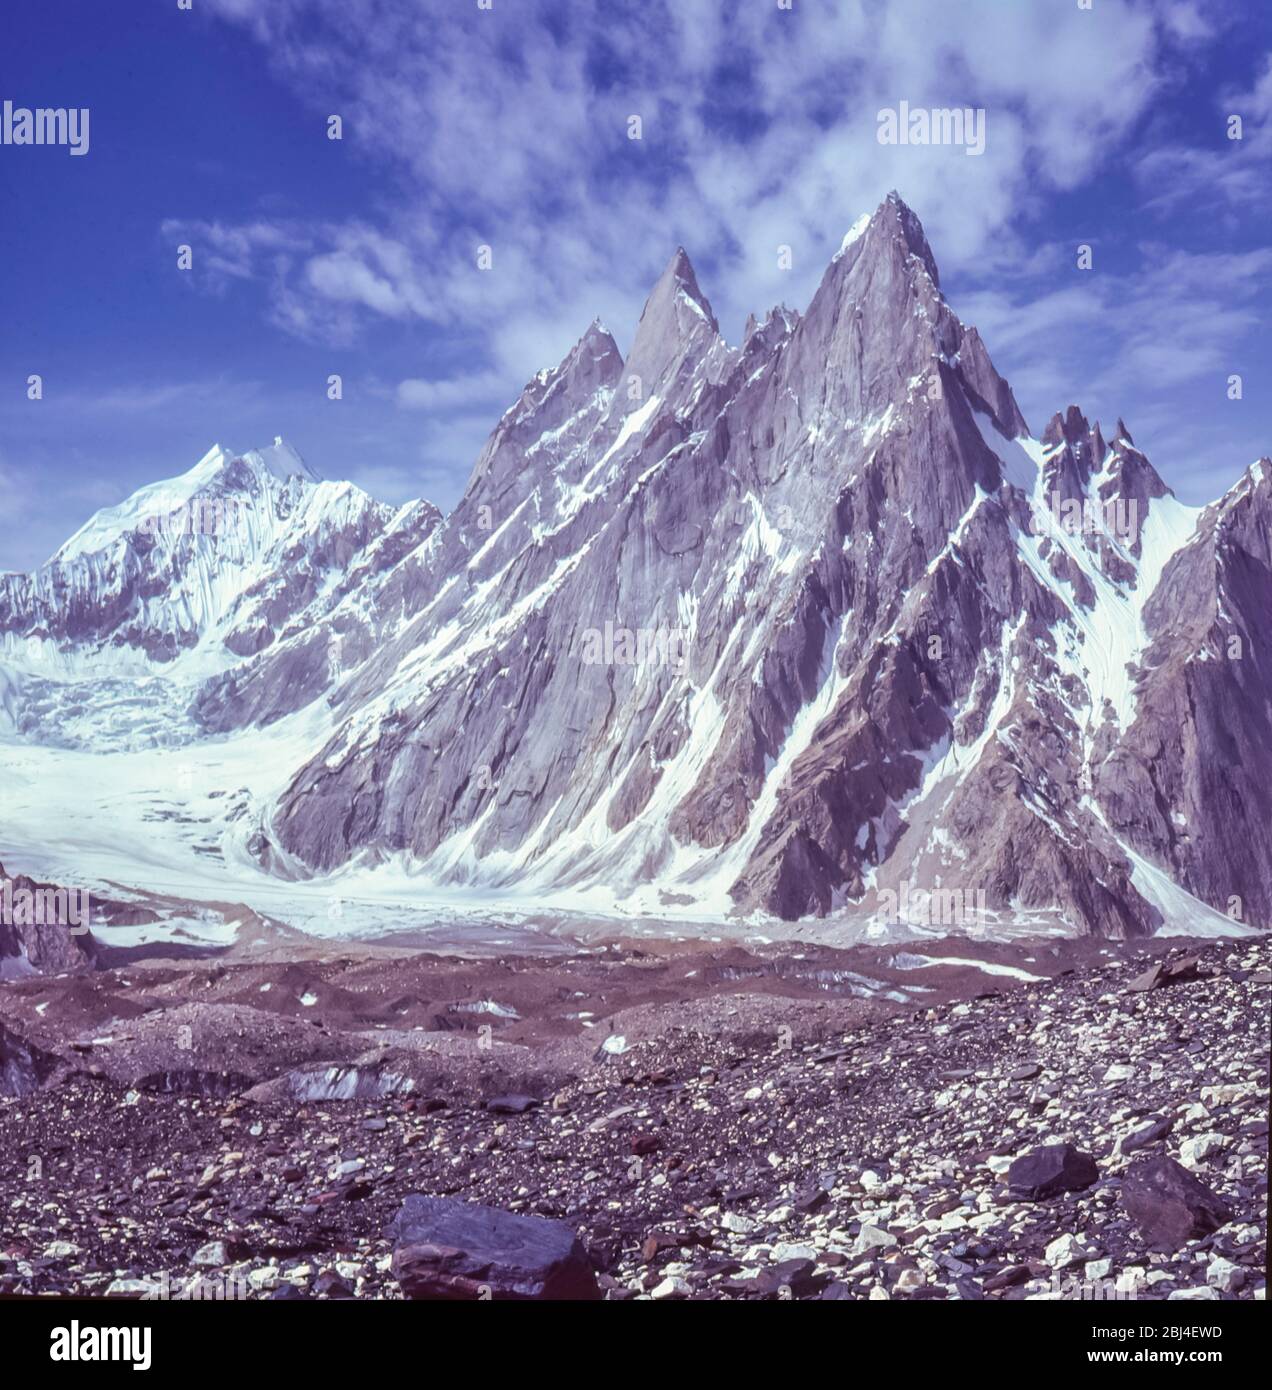 Pakistan, nördliche Gebiete der Karakorum-Berge. Bildaufnahme des Miter-Gipfels am Kopf des Baltoro-Gletschers von Concordia, der Bergsteigern als Thronsaal der Berggötter bekannt ist Stockfoto